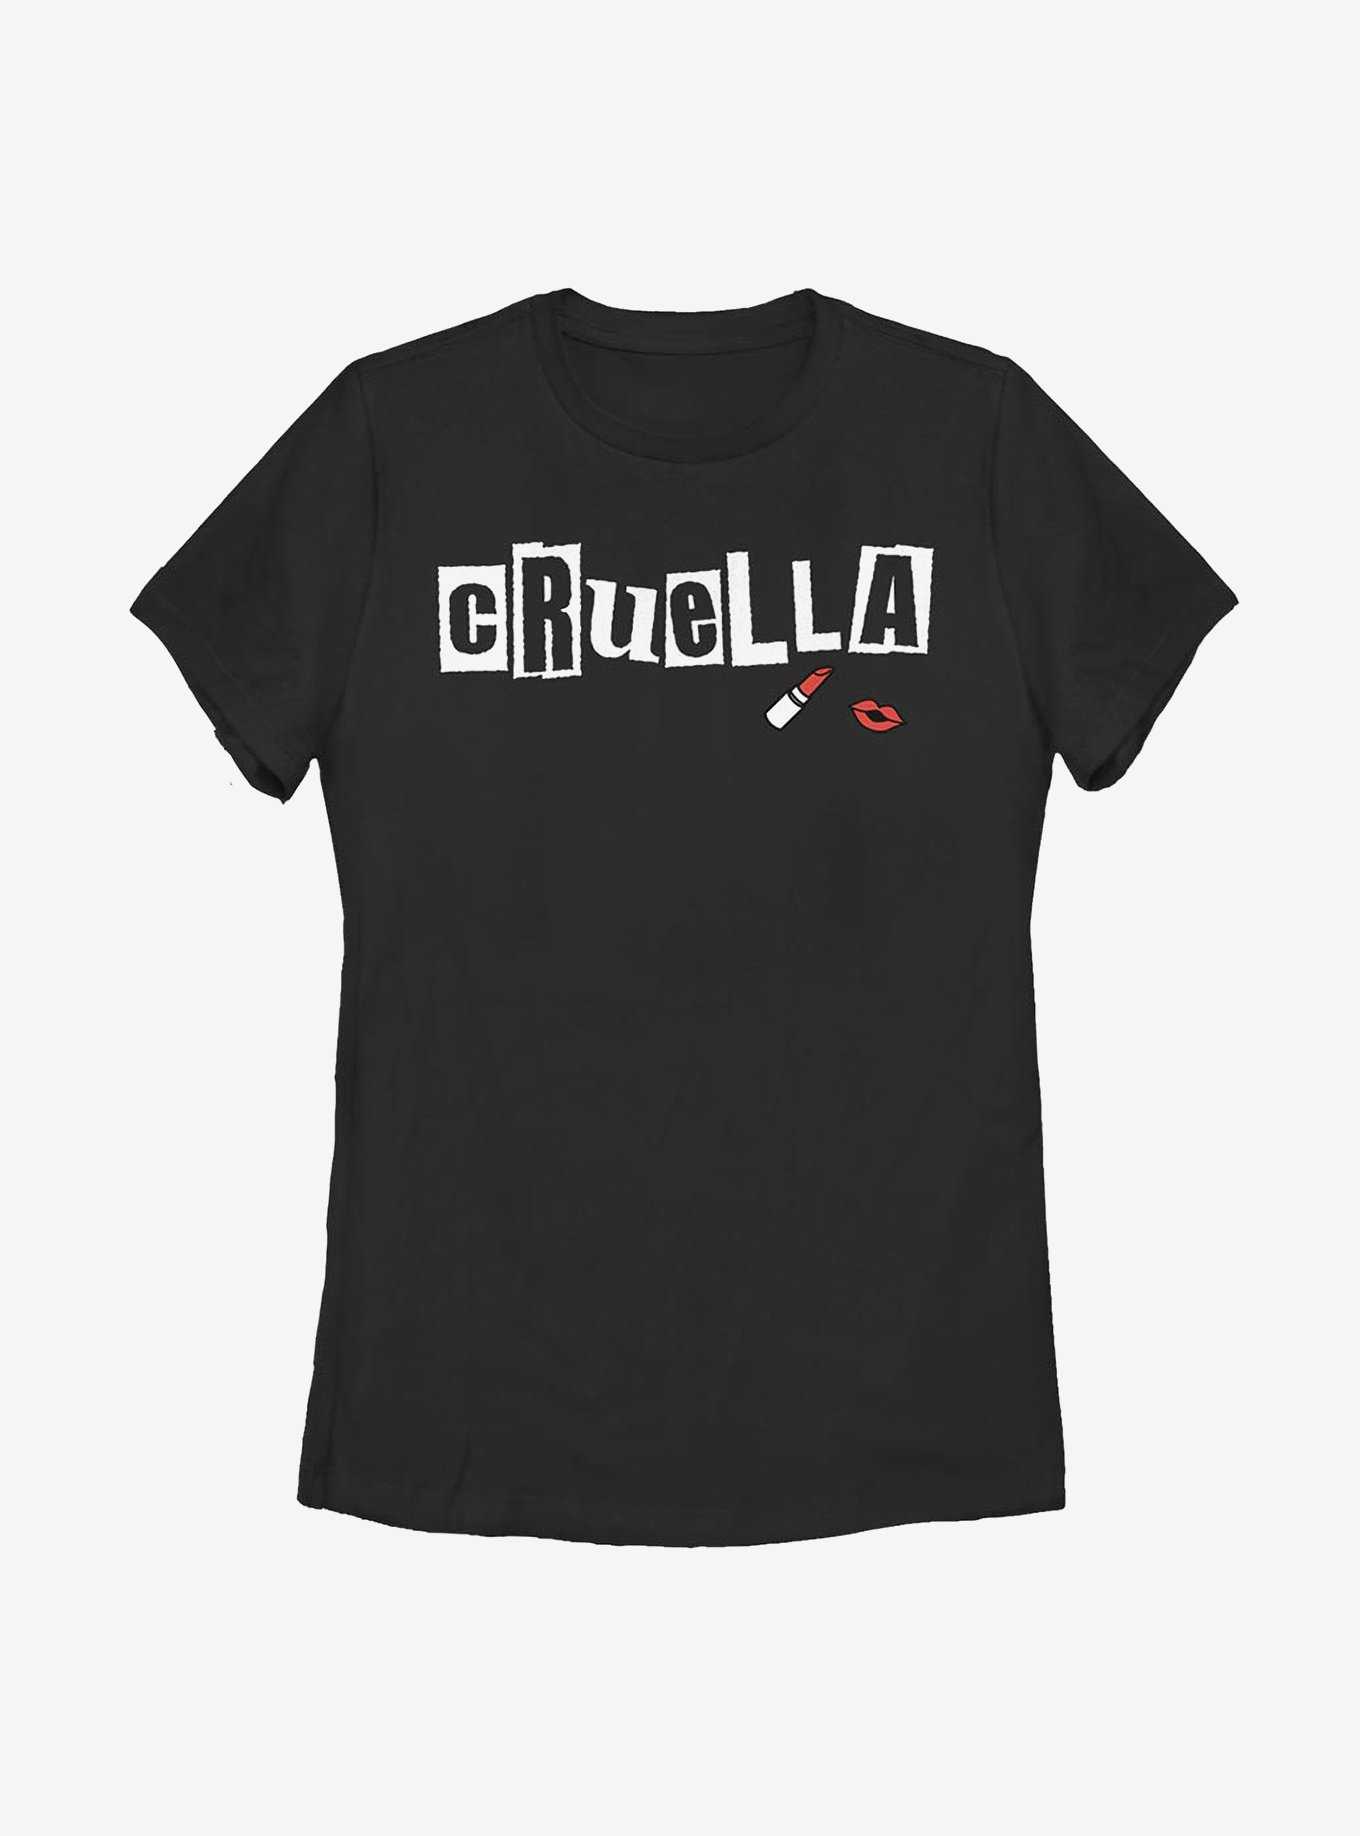 Disney Cruella Name Womens T-Shirt, , hi-res